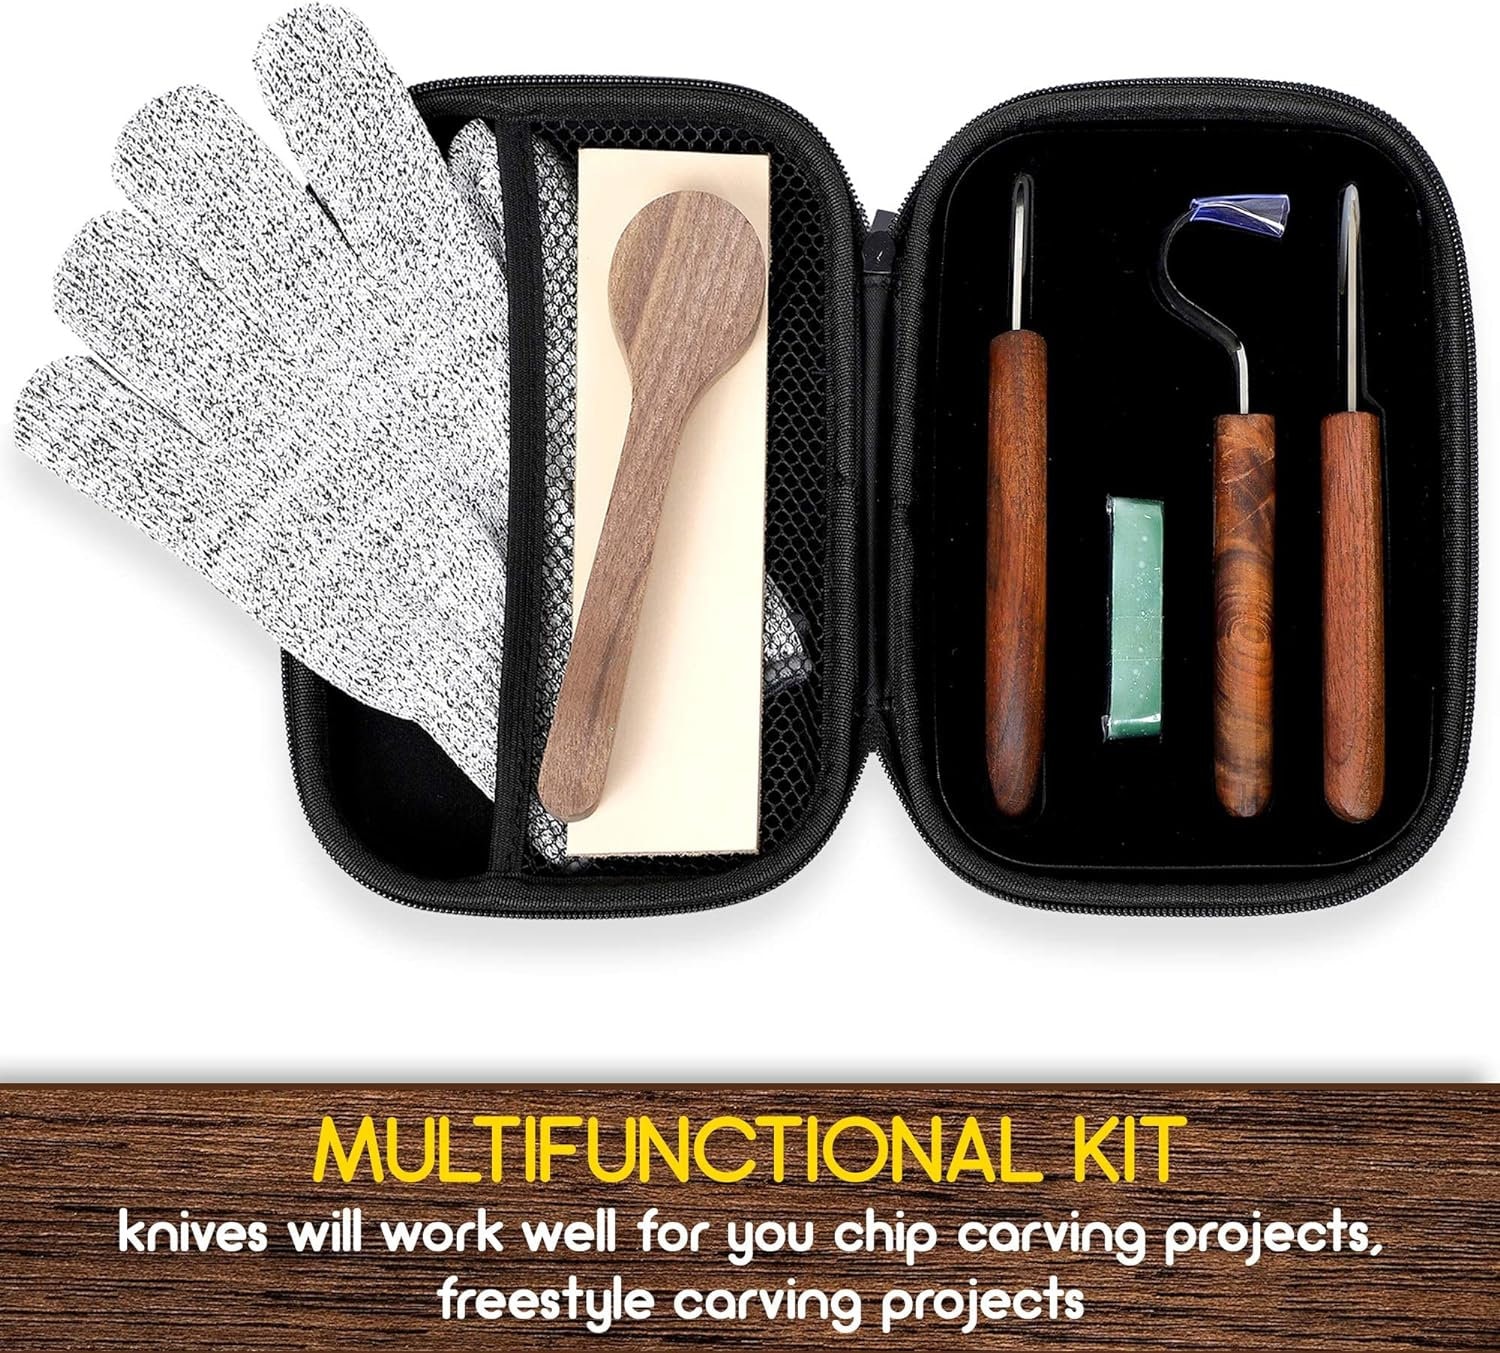 Wood Carving Kit for Beginners - Whittling kit with Giraffe